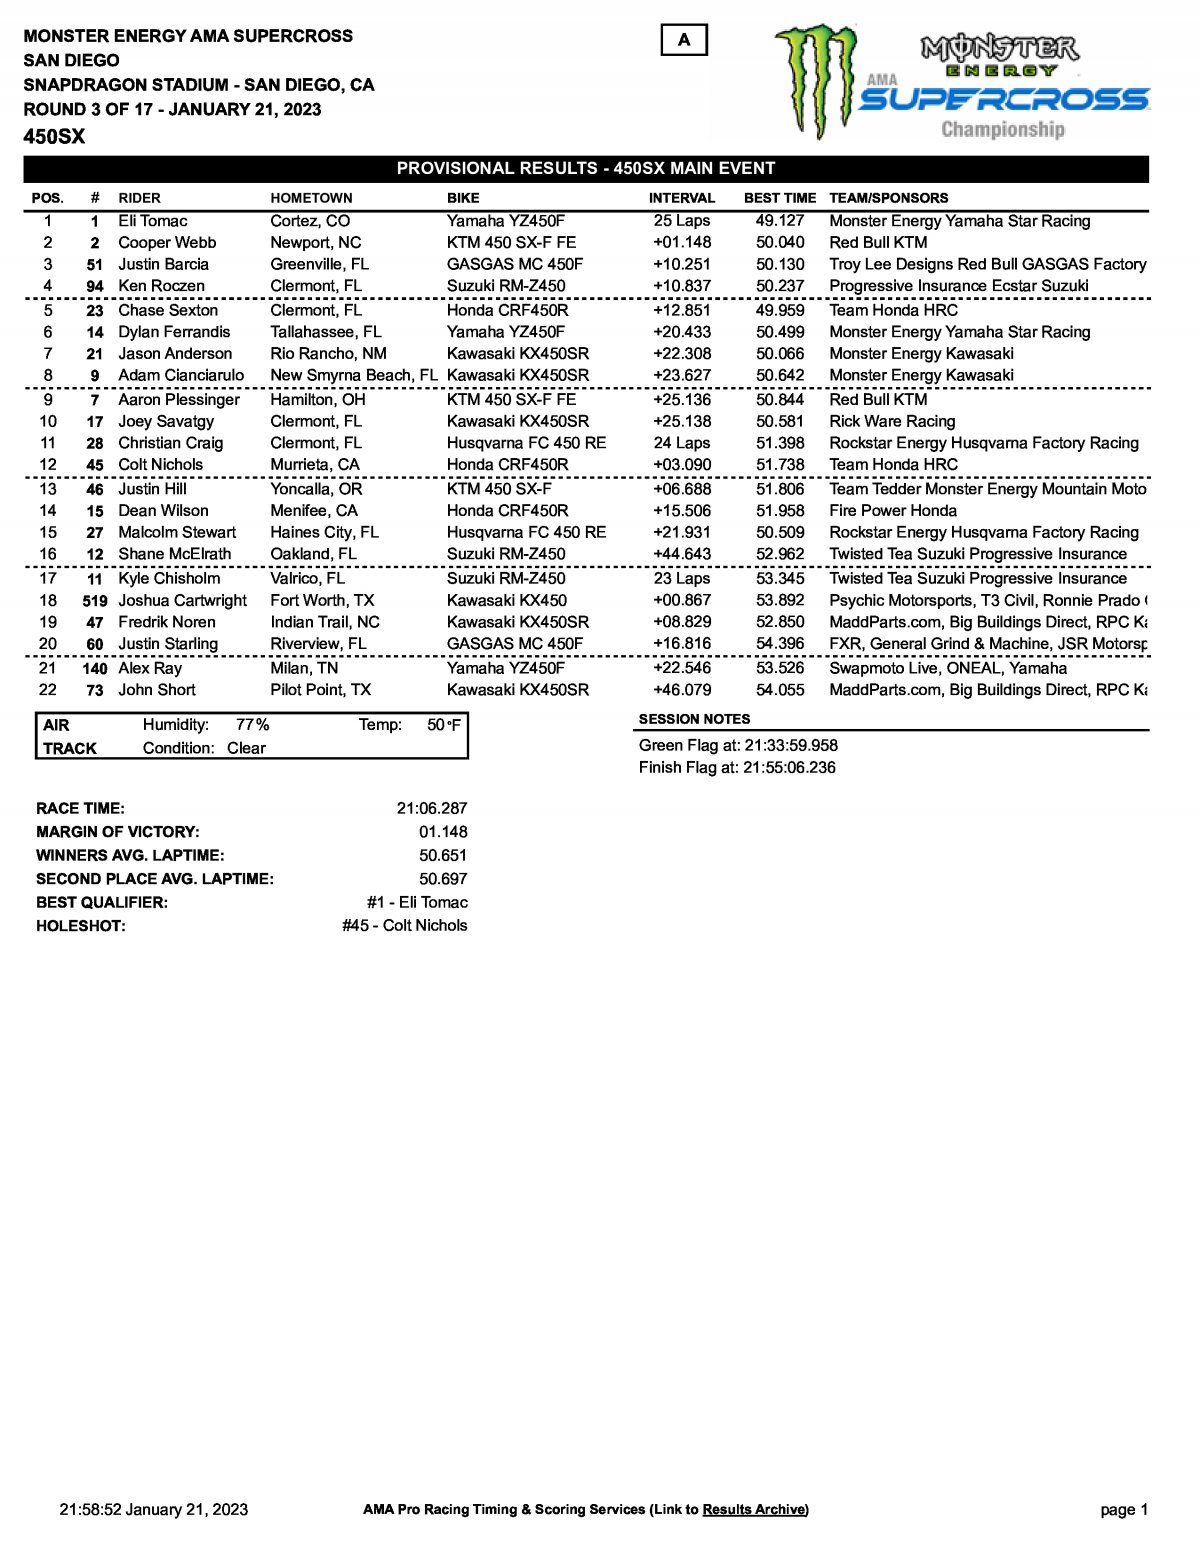 Результаты 1 этапа AMA Supercross, San Diego (21/01/2023)